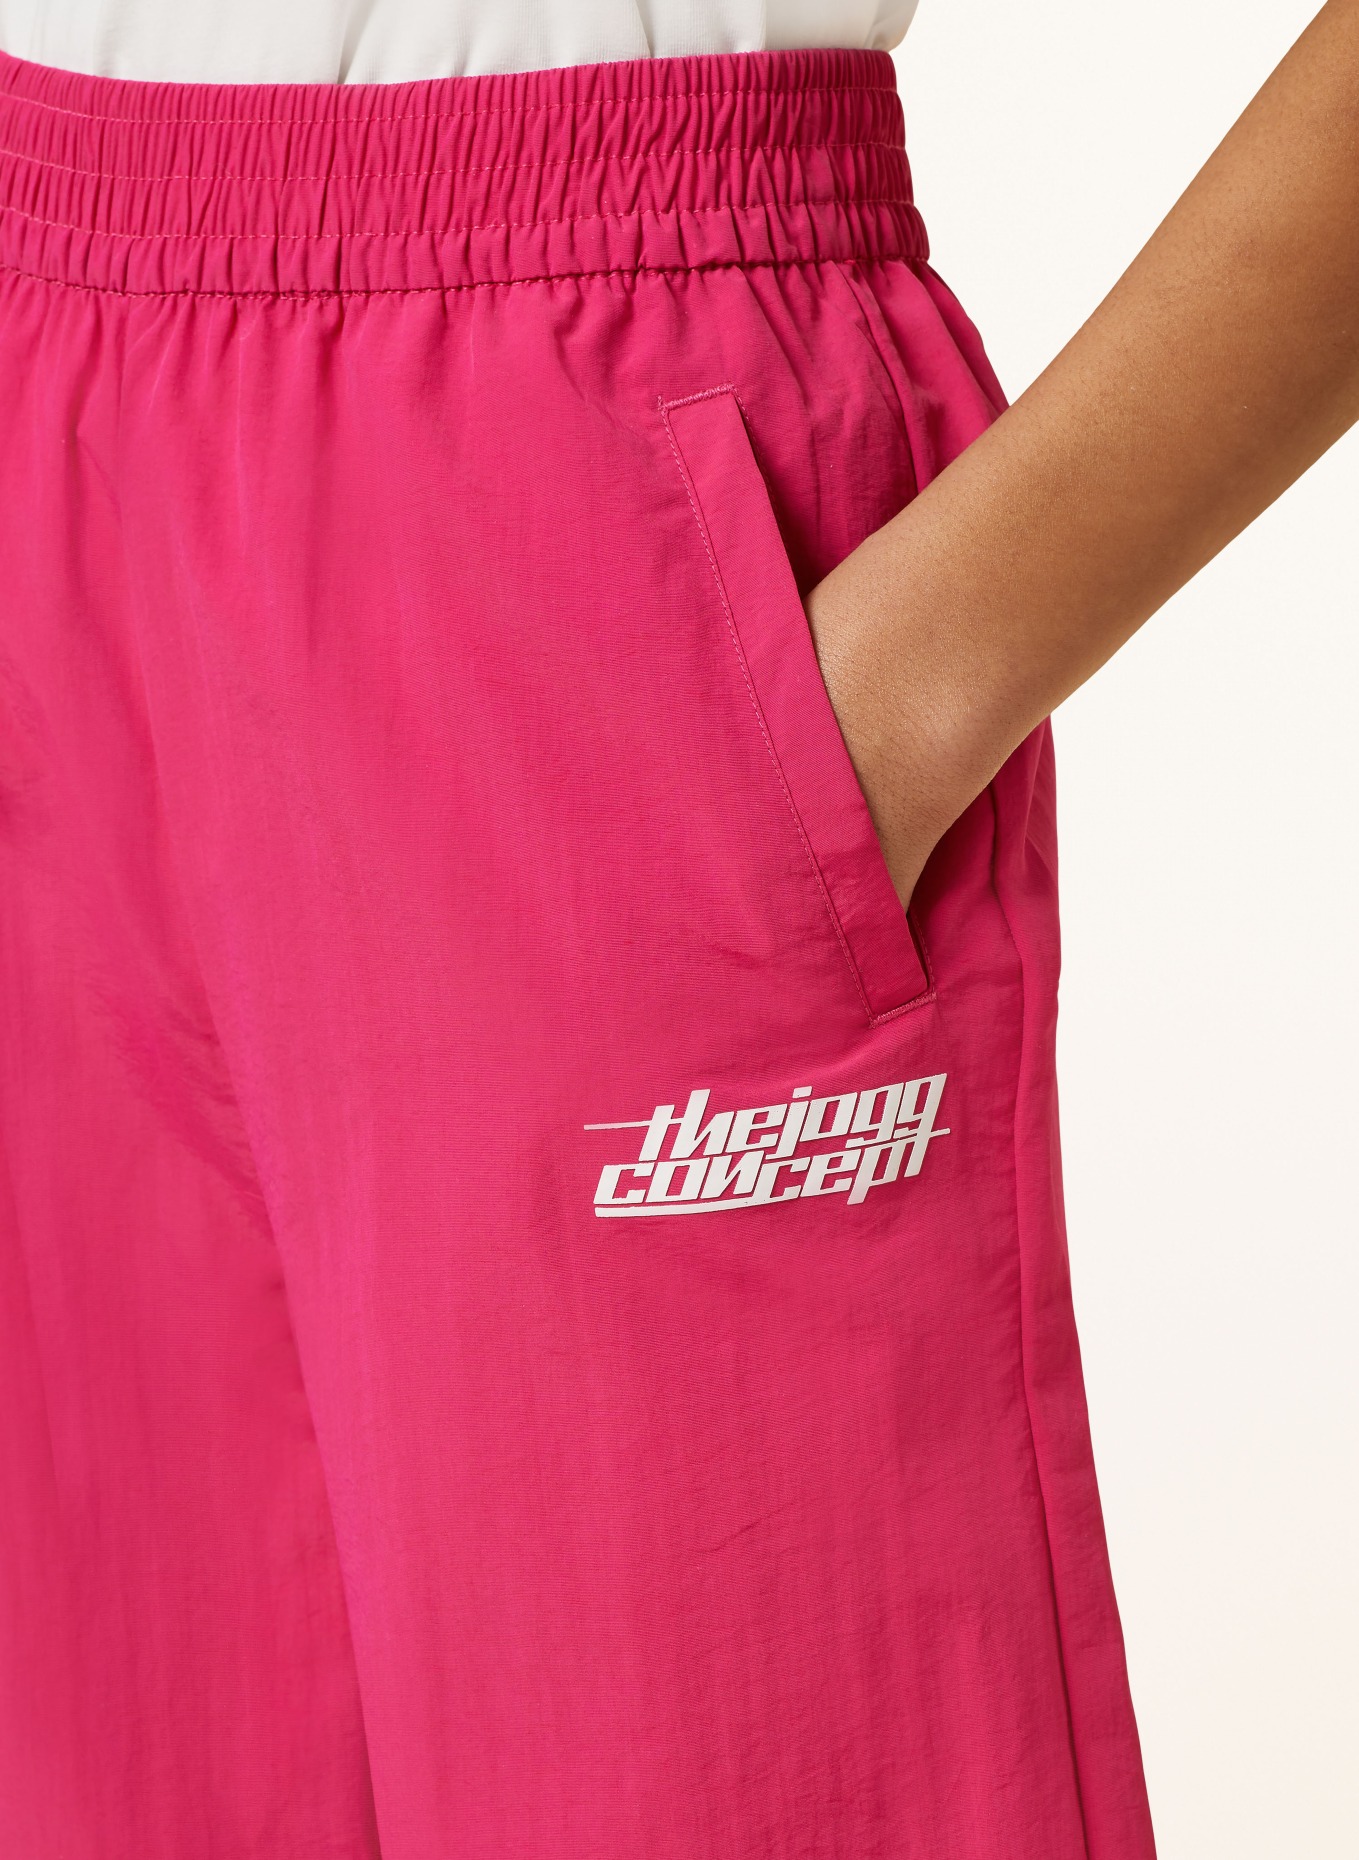 TheJoggConcept Track pants JCFAI, Color: PINK (Image 5)